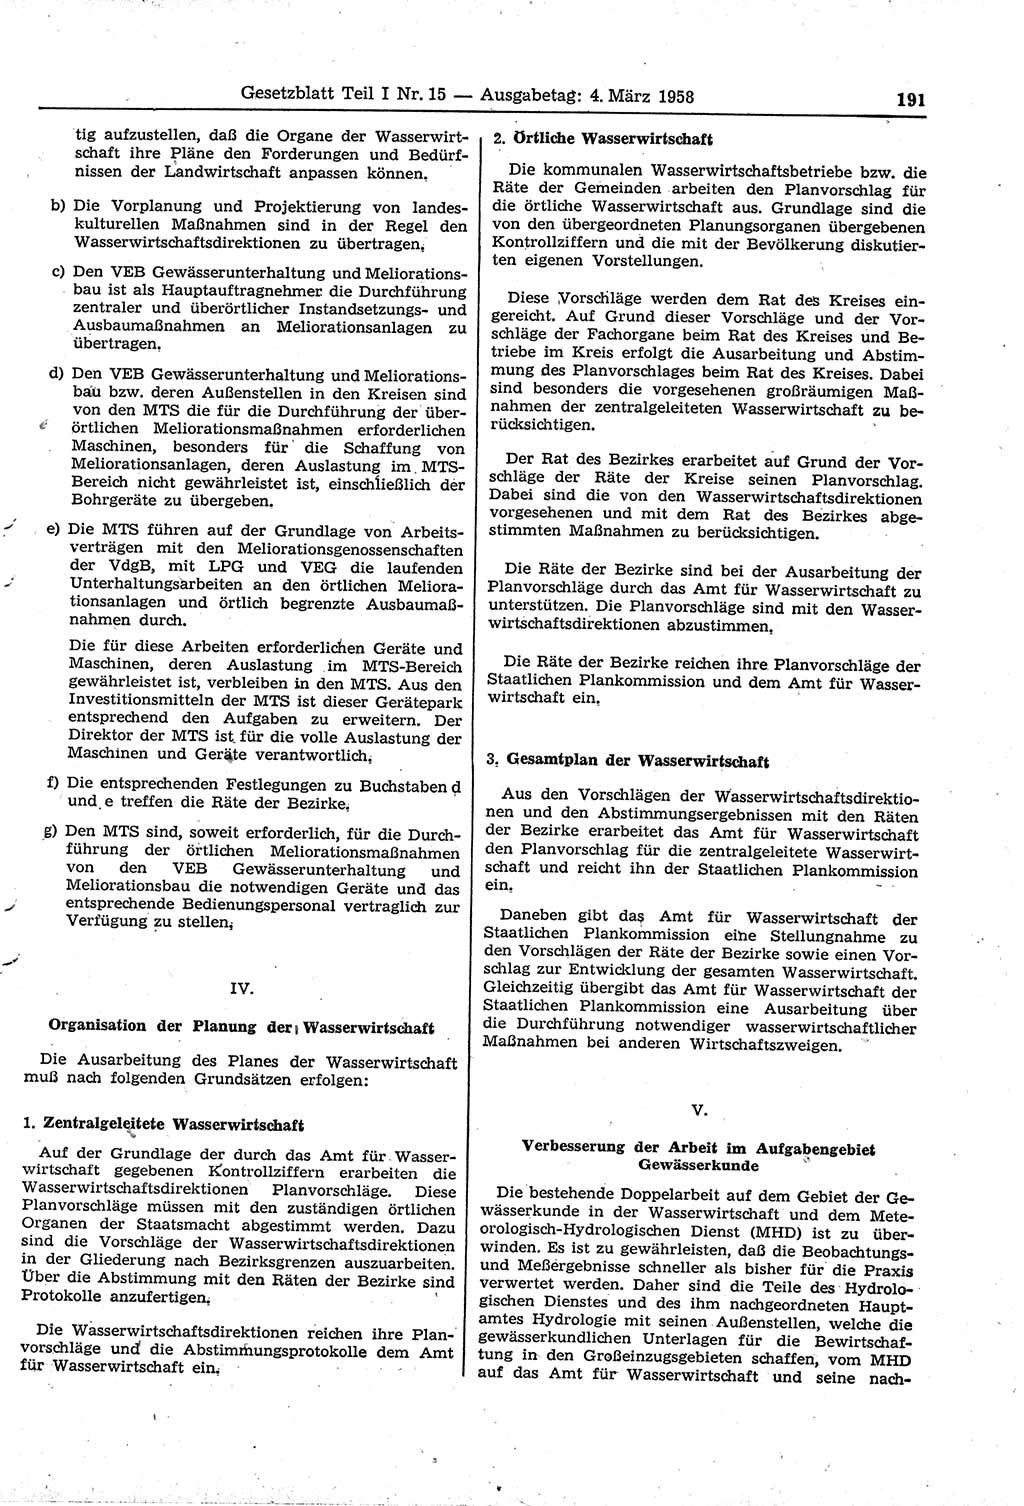 Gesetzblatt (GBl.) der Deutschen Demokratischen Republik (DDR) Teil Ⅰ 1958, Seite 191 (GBl. DDR Ⅰ 1958, S. 191)